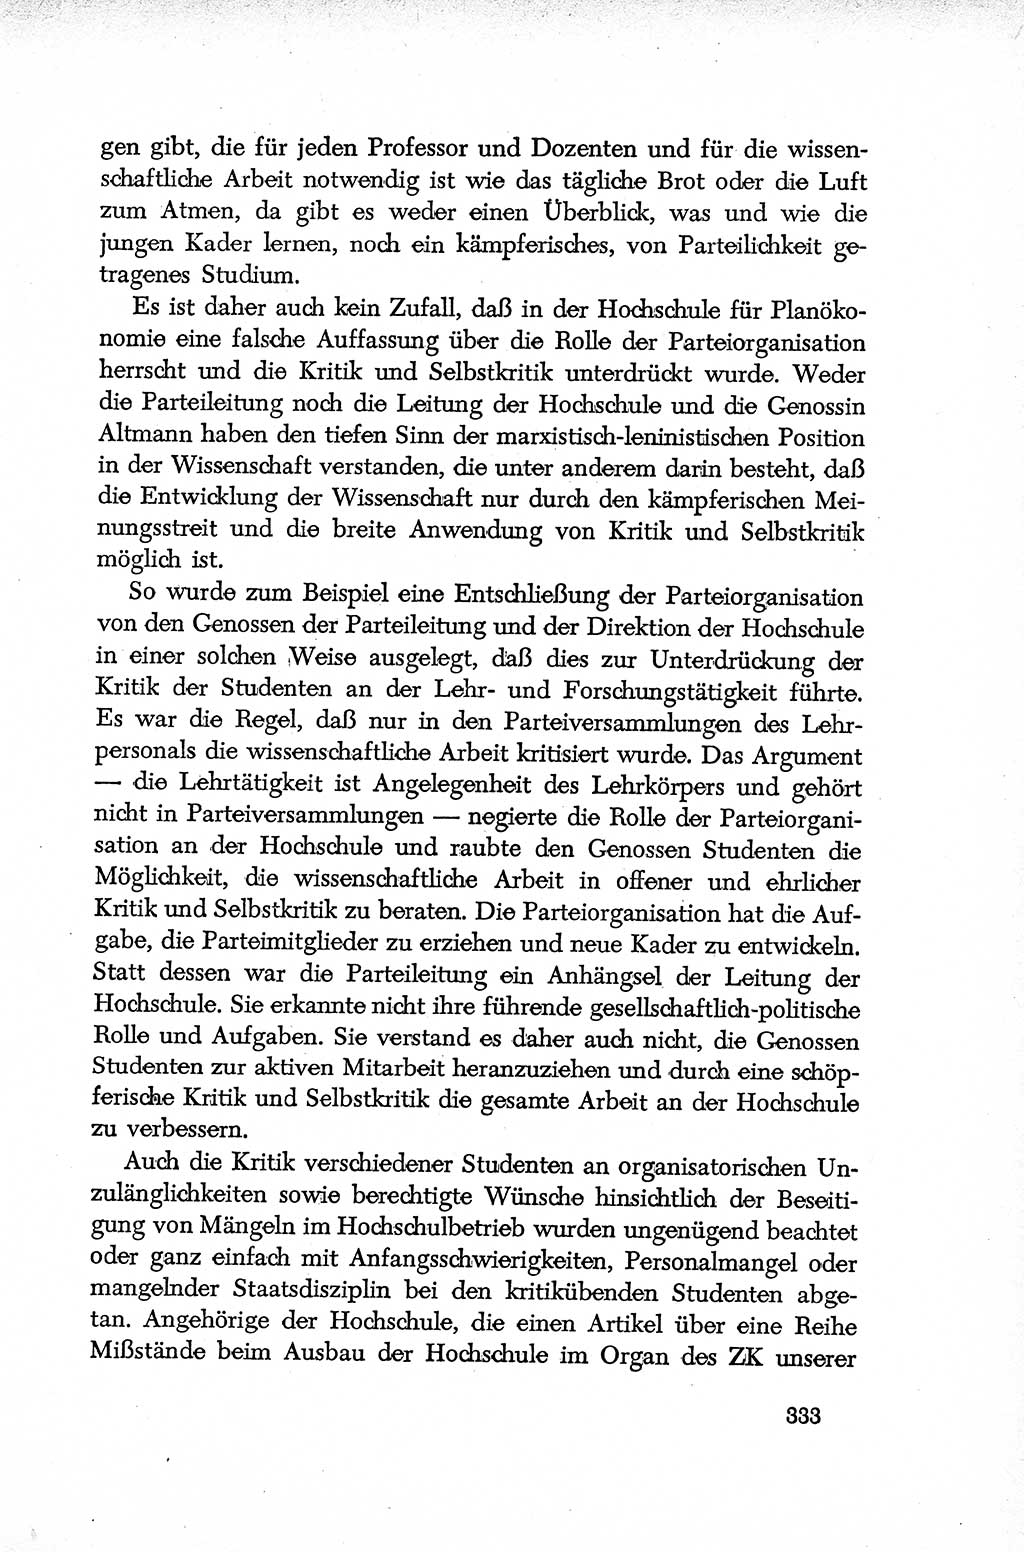 Dokumente der Sozialistischen Einheitspartei Deutschlands (SED) [Deutsche Demokratische Republik (DDR)] 1952-1953, Seite 333 (Dok. SED DDR 1952-1953, S. 333)